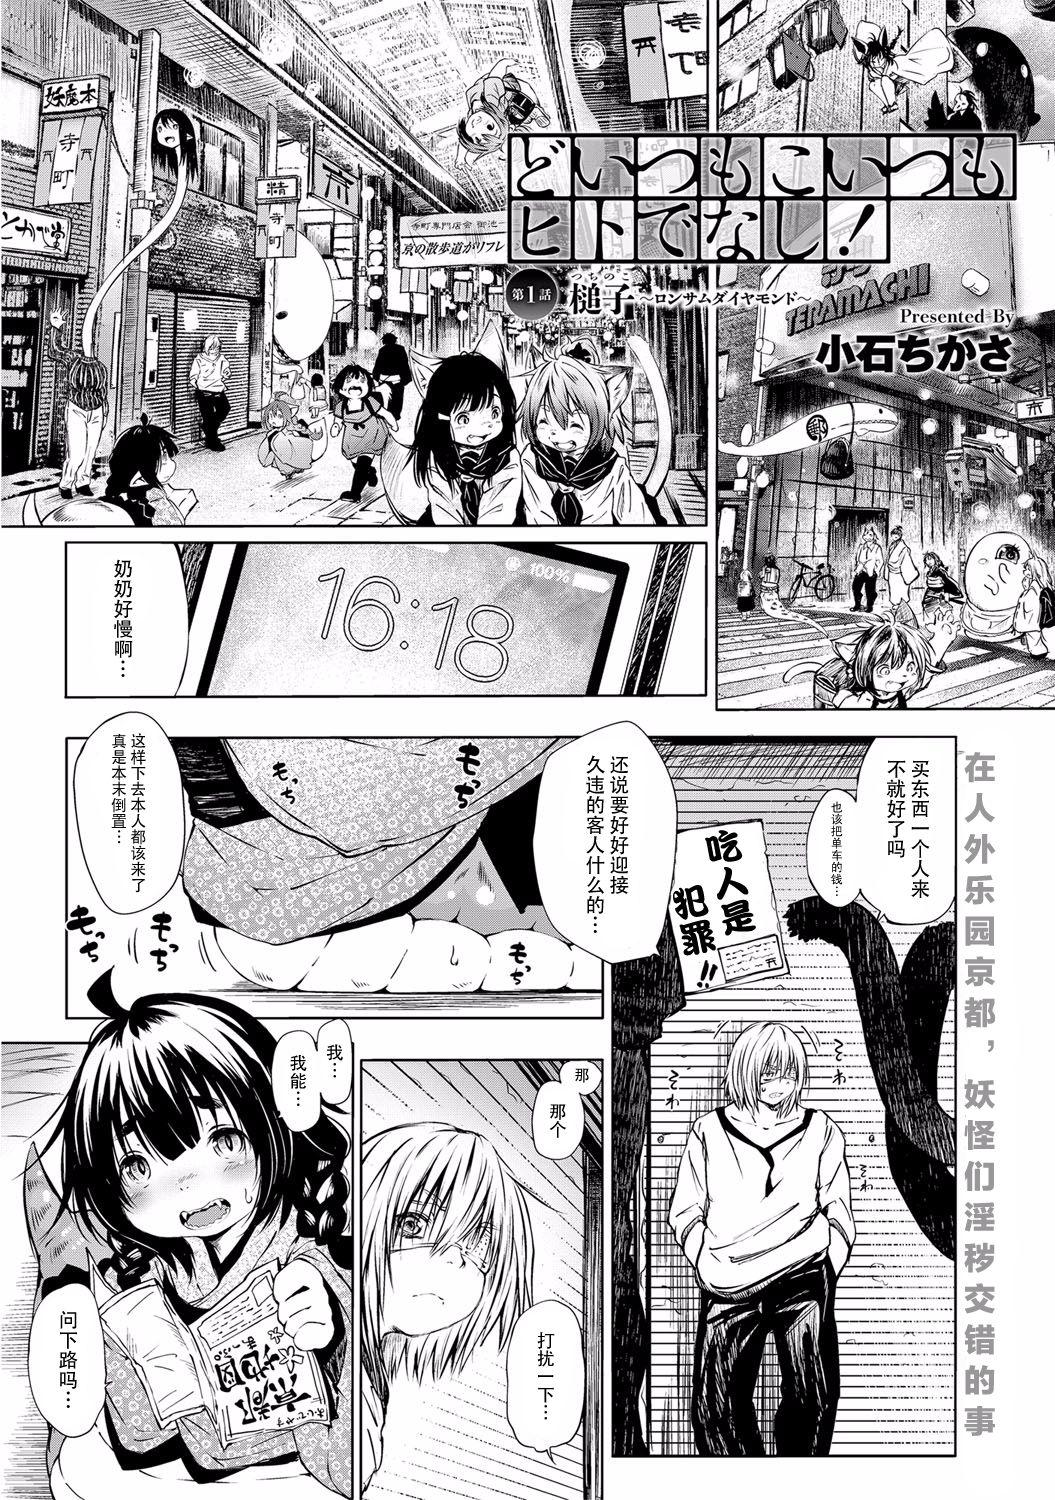 Naughty Doitsu mo Koitsu mo Hito de Nashi! Ch. 1 - Tsuchinoko Candid - Page 2